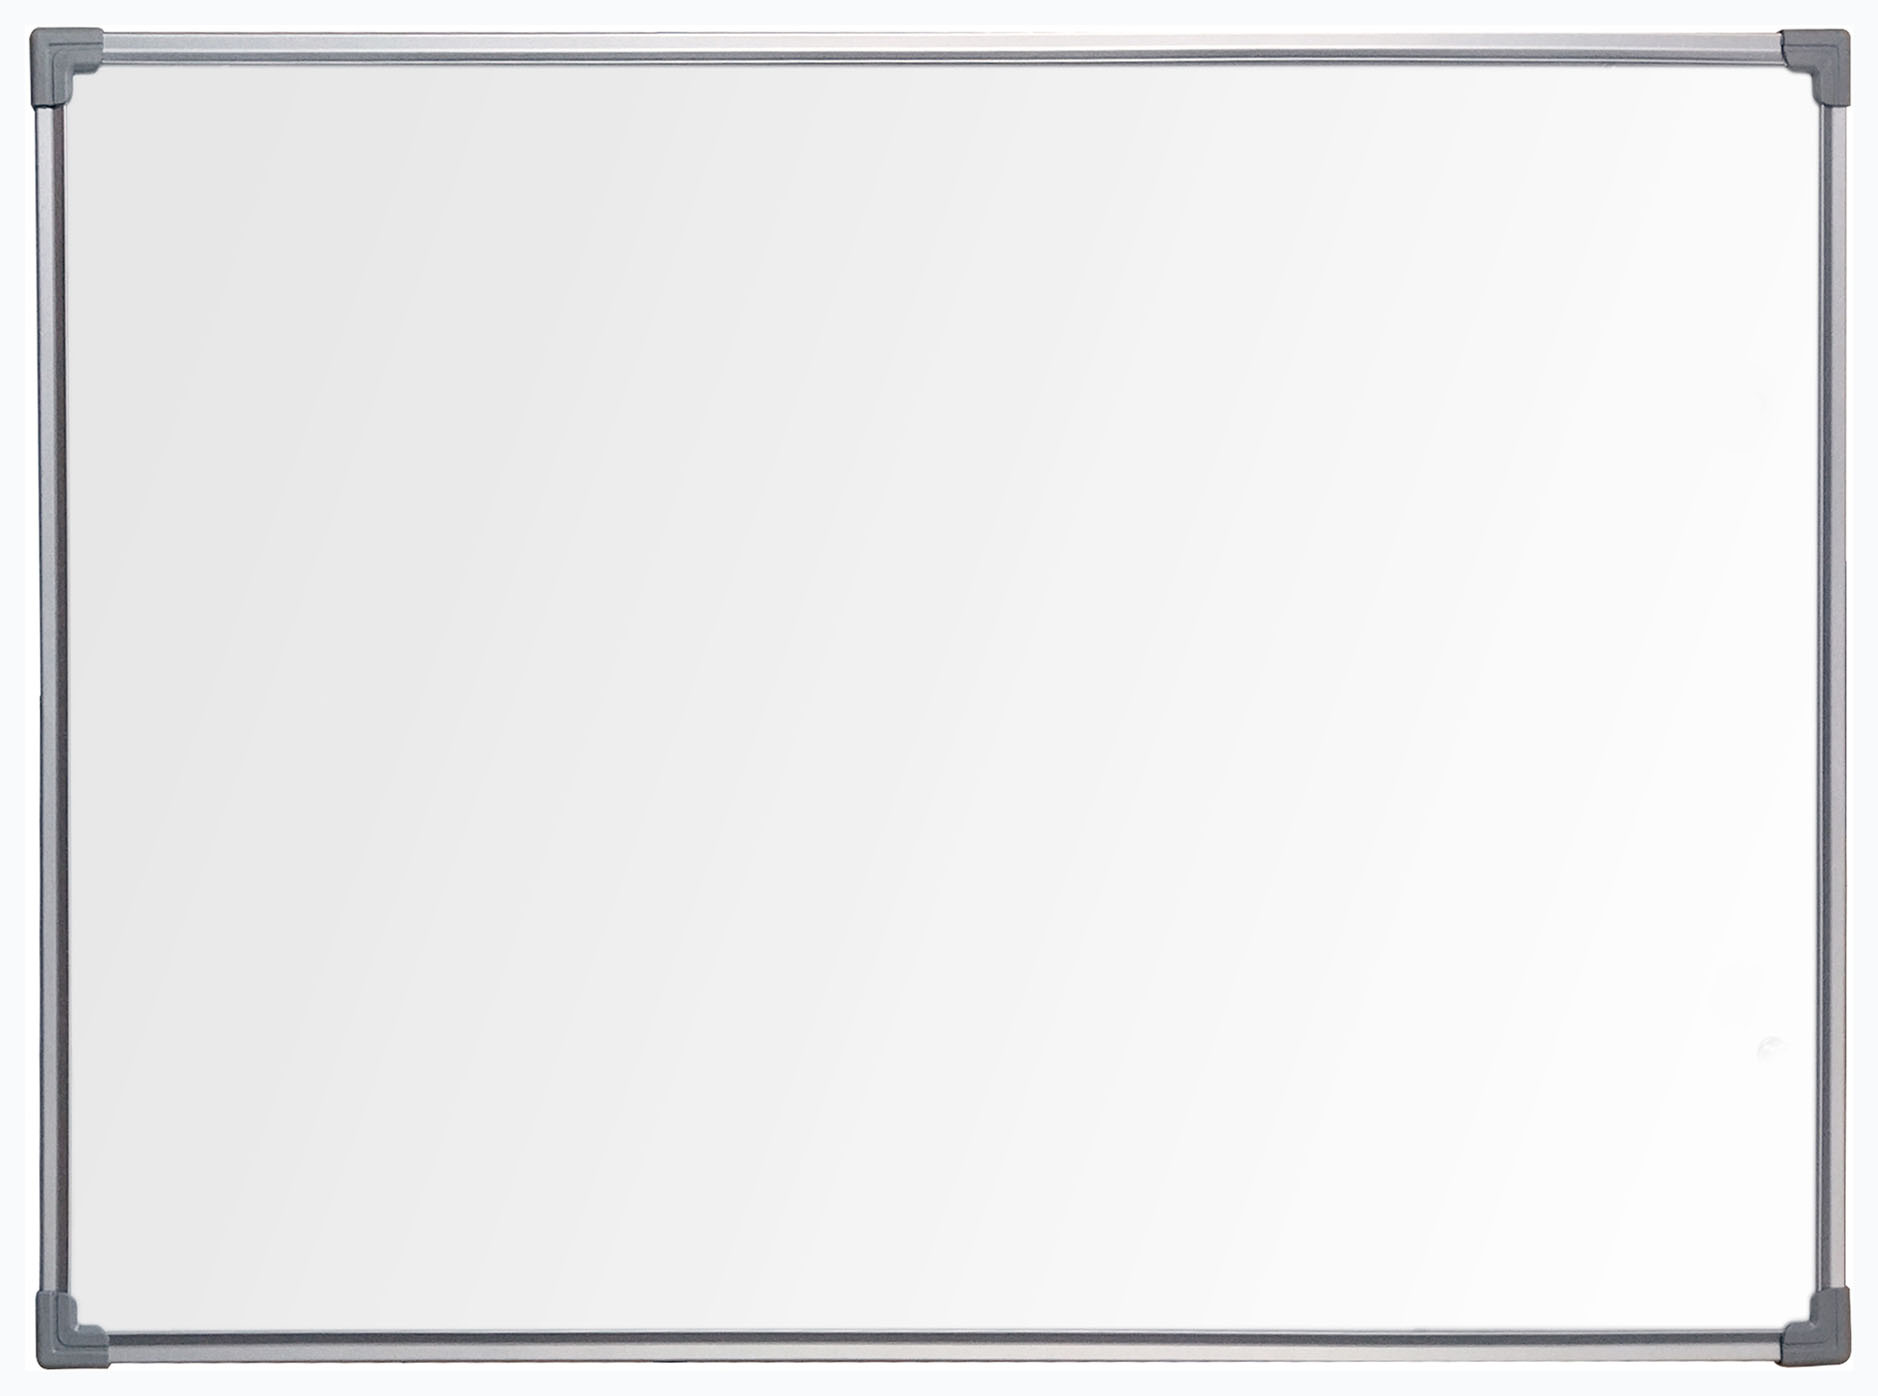 Демонстрационная доска BoardSYS Ecolite магнитно-маркерная, 90x120см, лак (белый)/алюминий (серый) (10ФСС90)